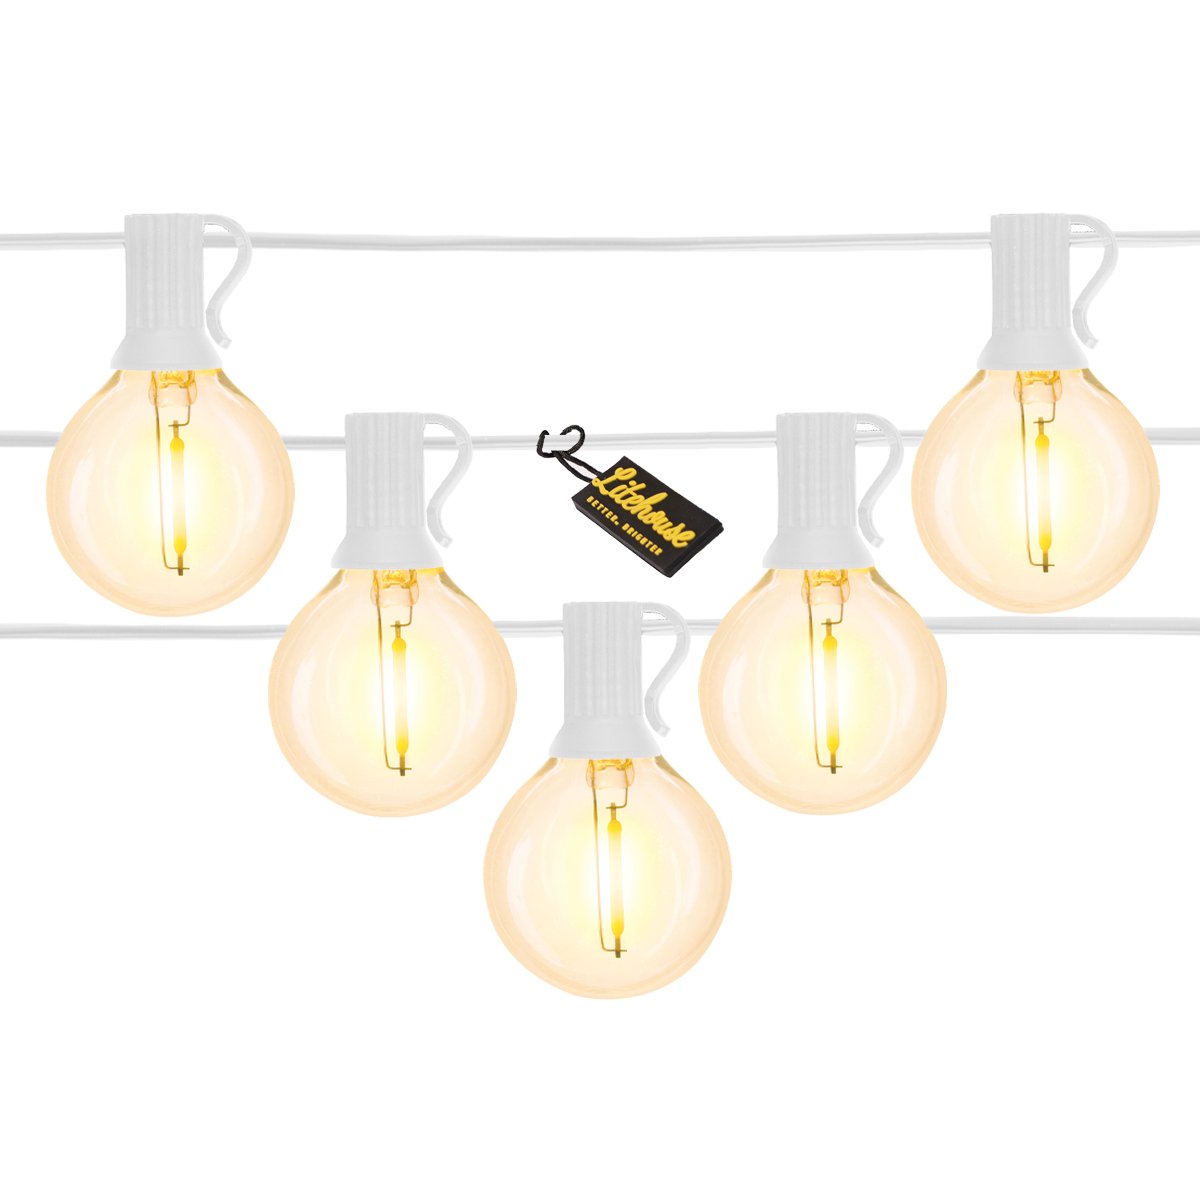 Litehouse White LED Classic Bulb String Lights - Litehouse